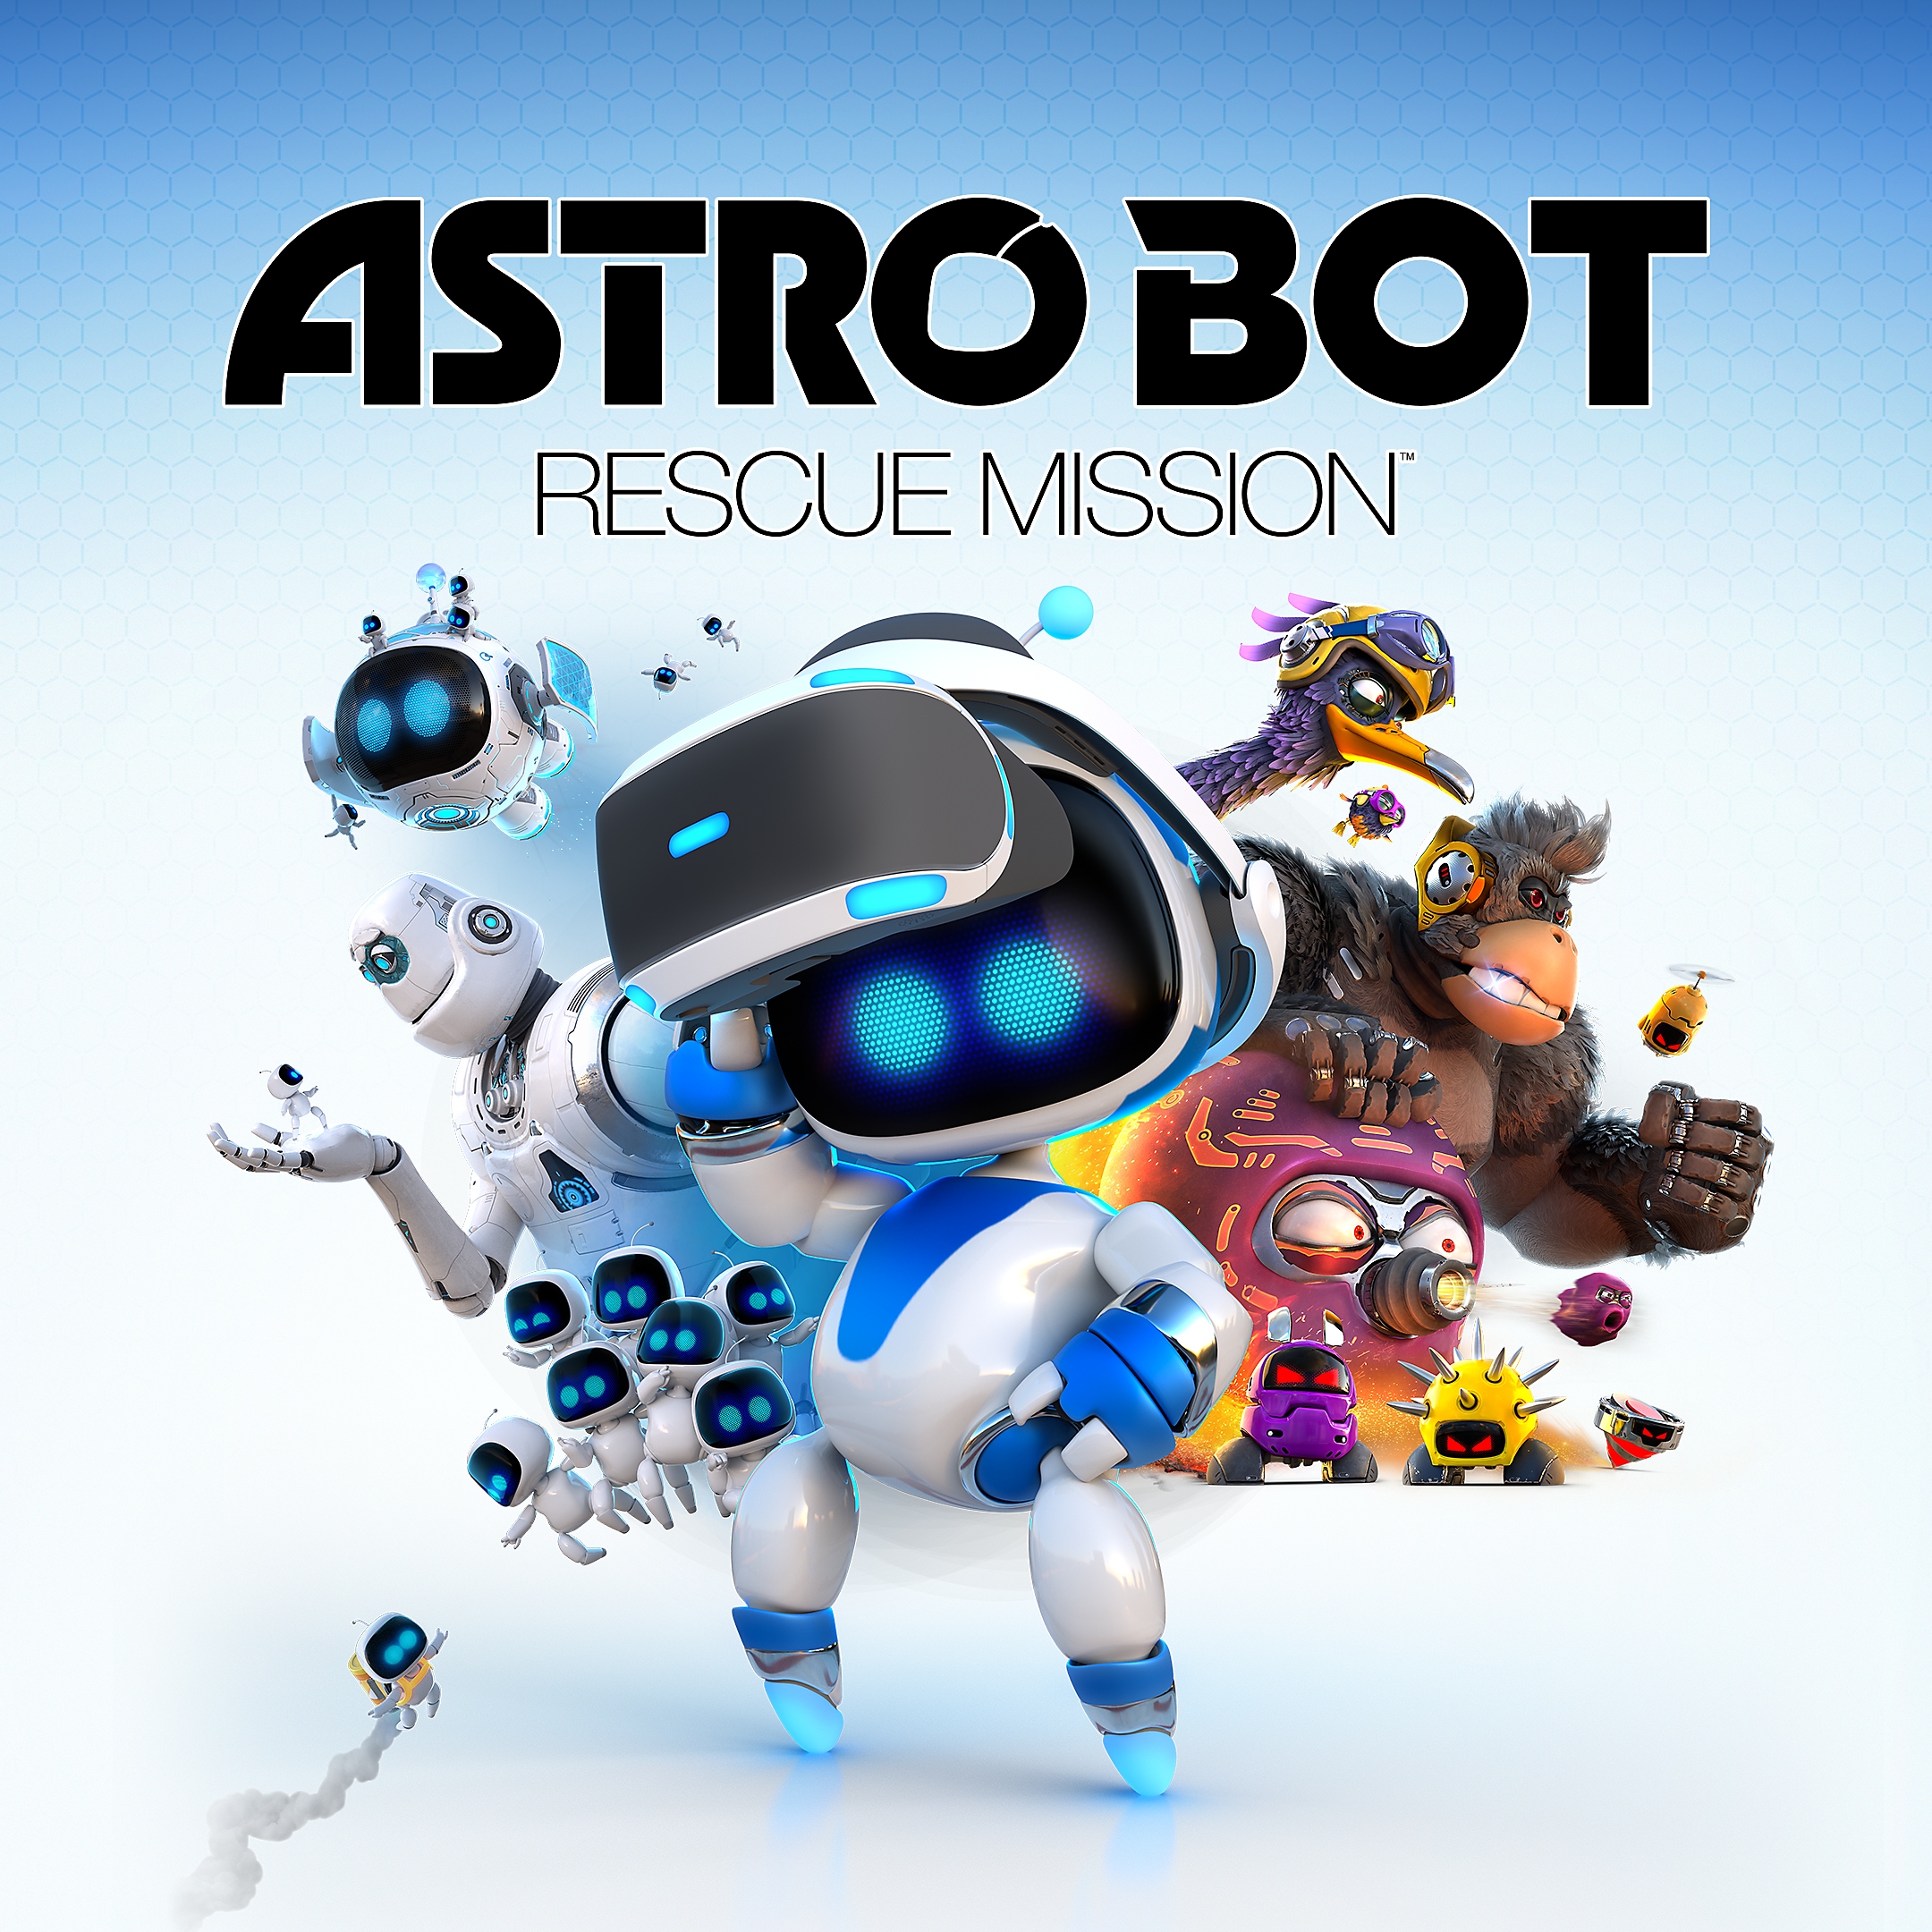 Miniature Astro Bot Rescue Mission